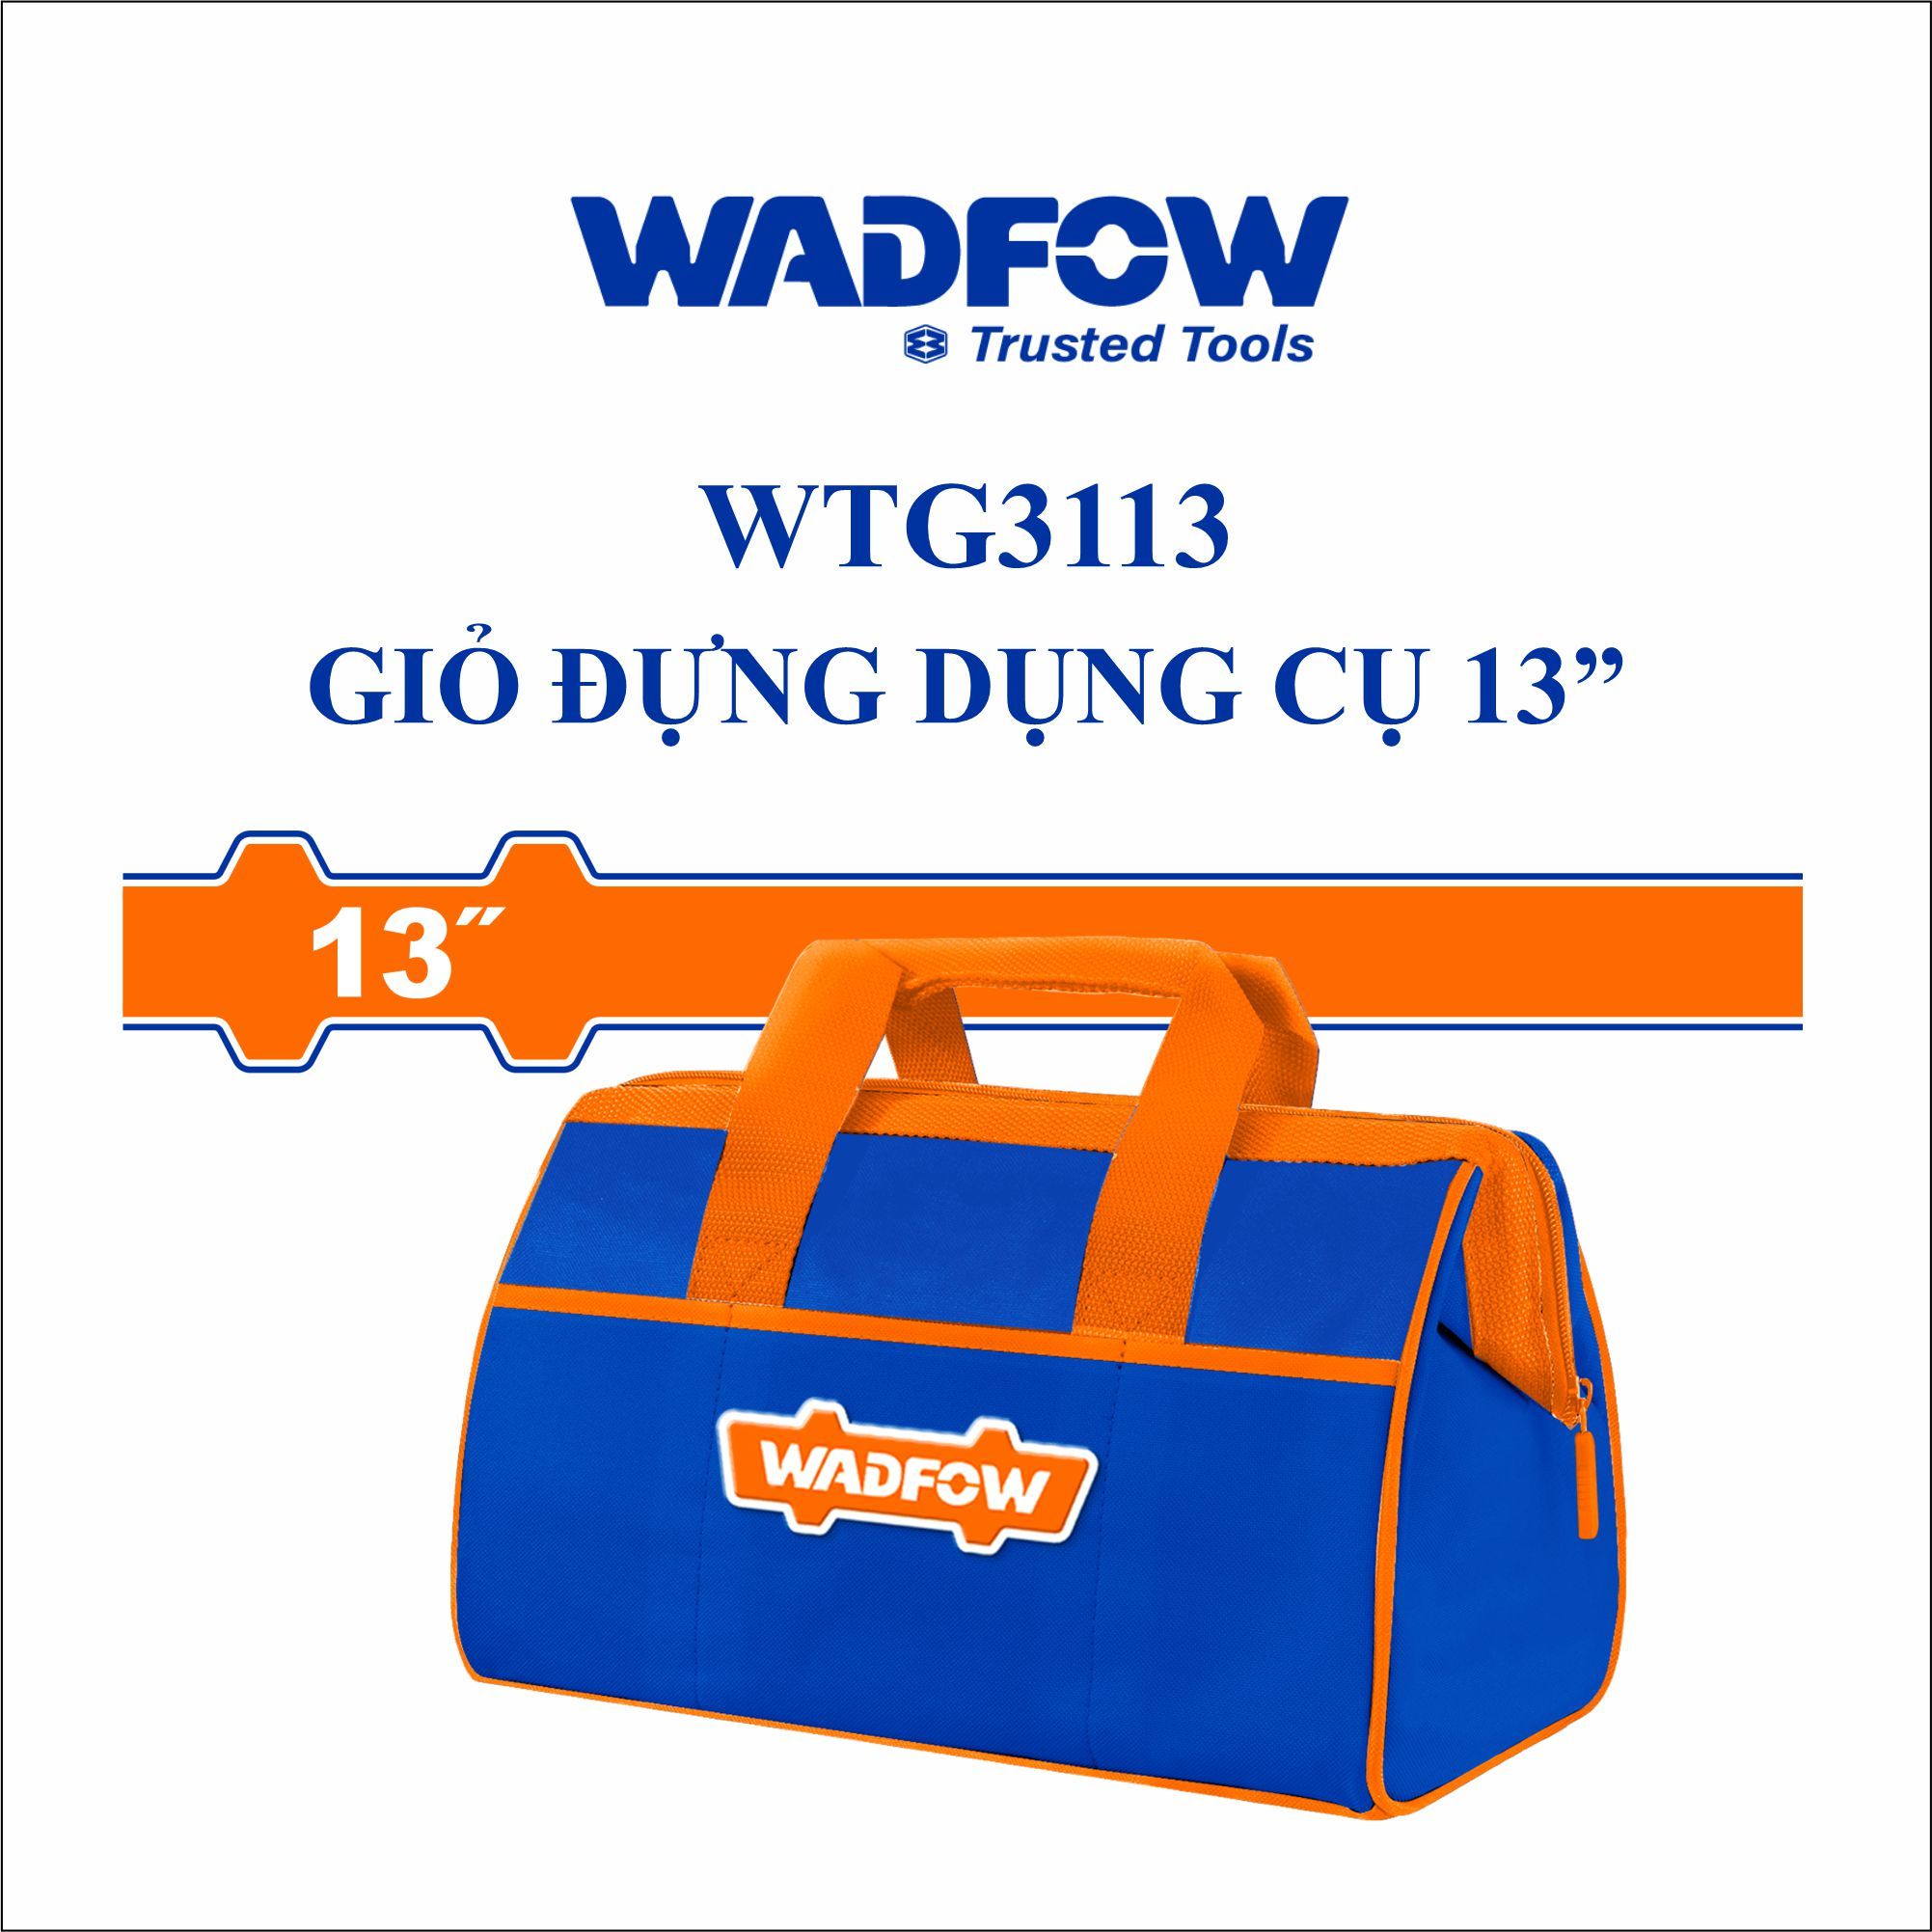  Giỏ đựng dụng cụ 13 Inch WADFOW WTG3113 